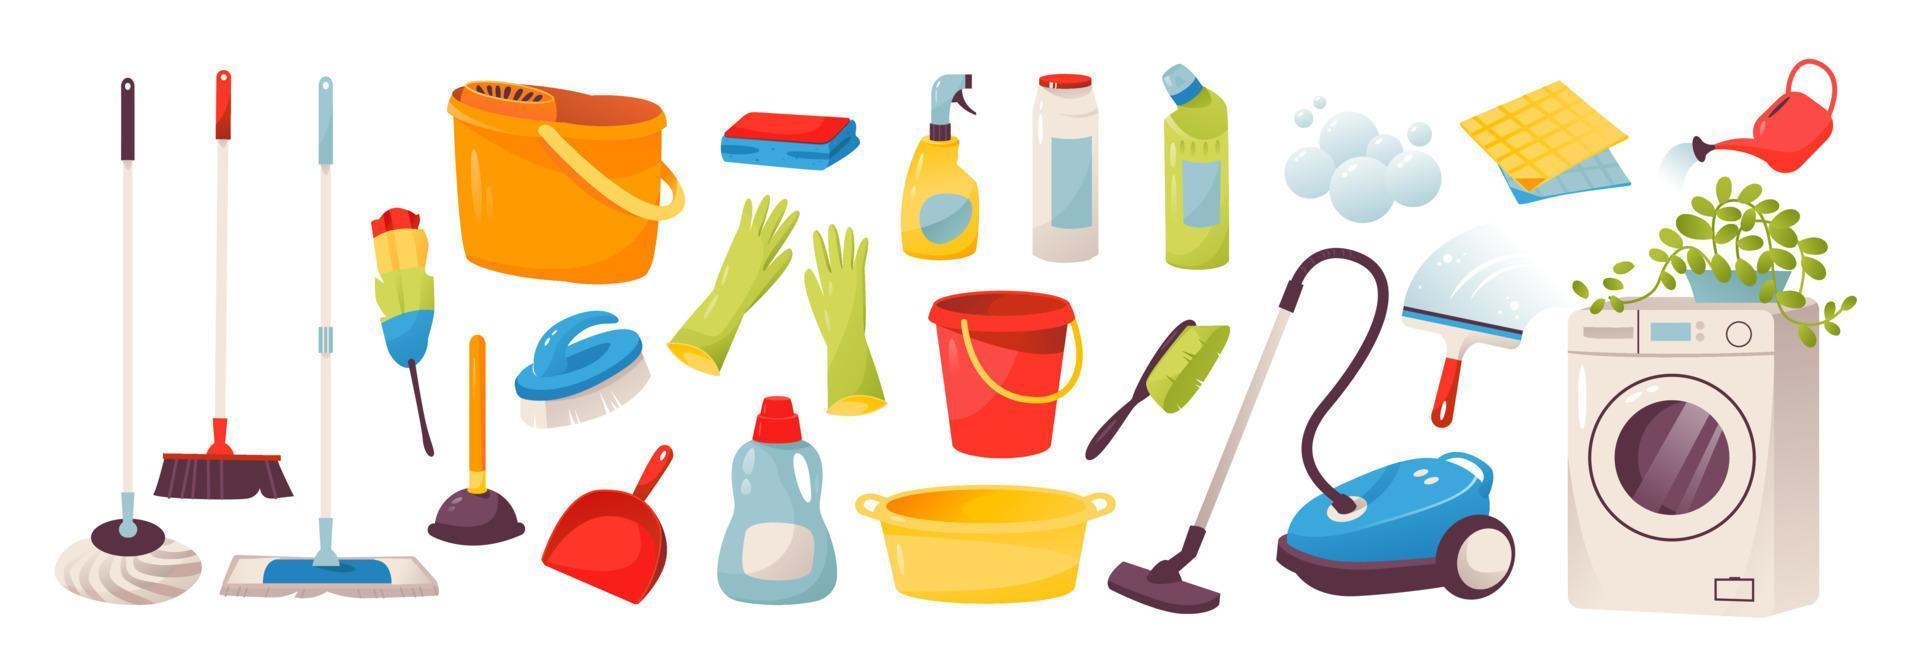 pulizia. icone di strumenti per la pulizia della casa e dell'ufficio. lavatrice, aspirapolvere, detersivi e prodotti per la pulizia. concetto di lavoro domestico. illustrazione vettoriale isolata